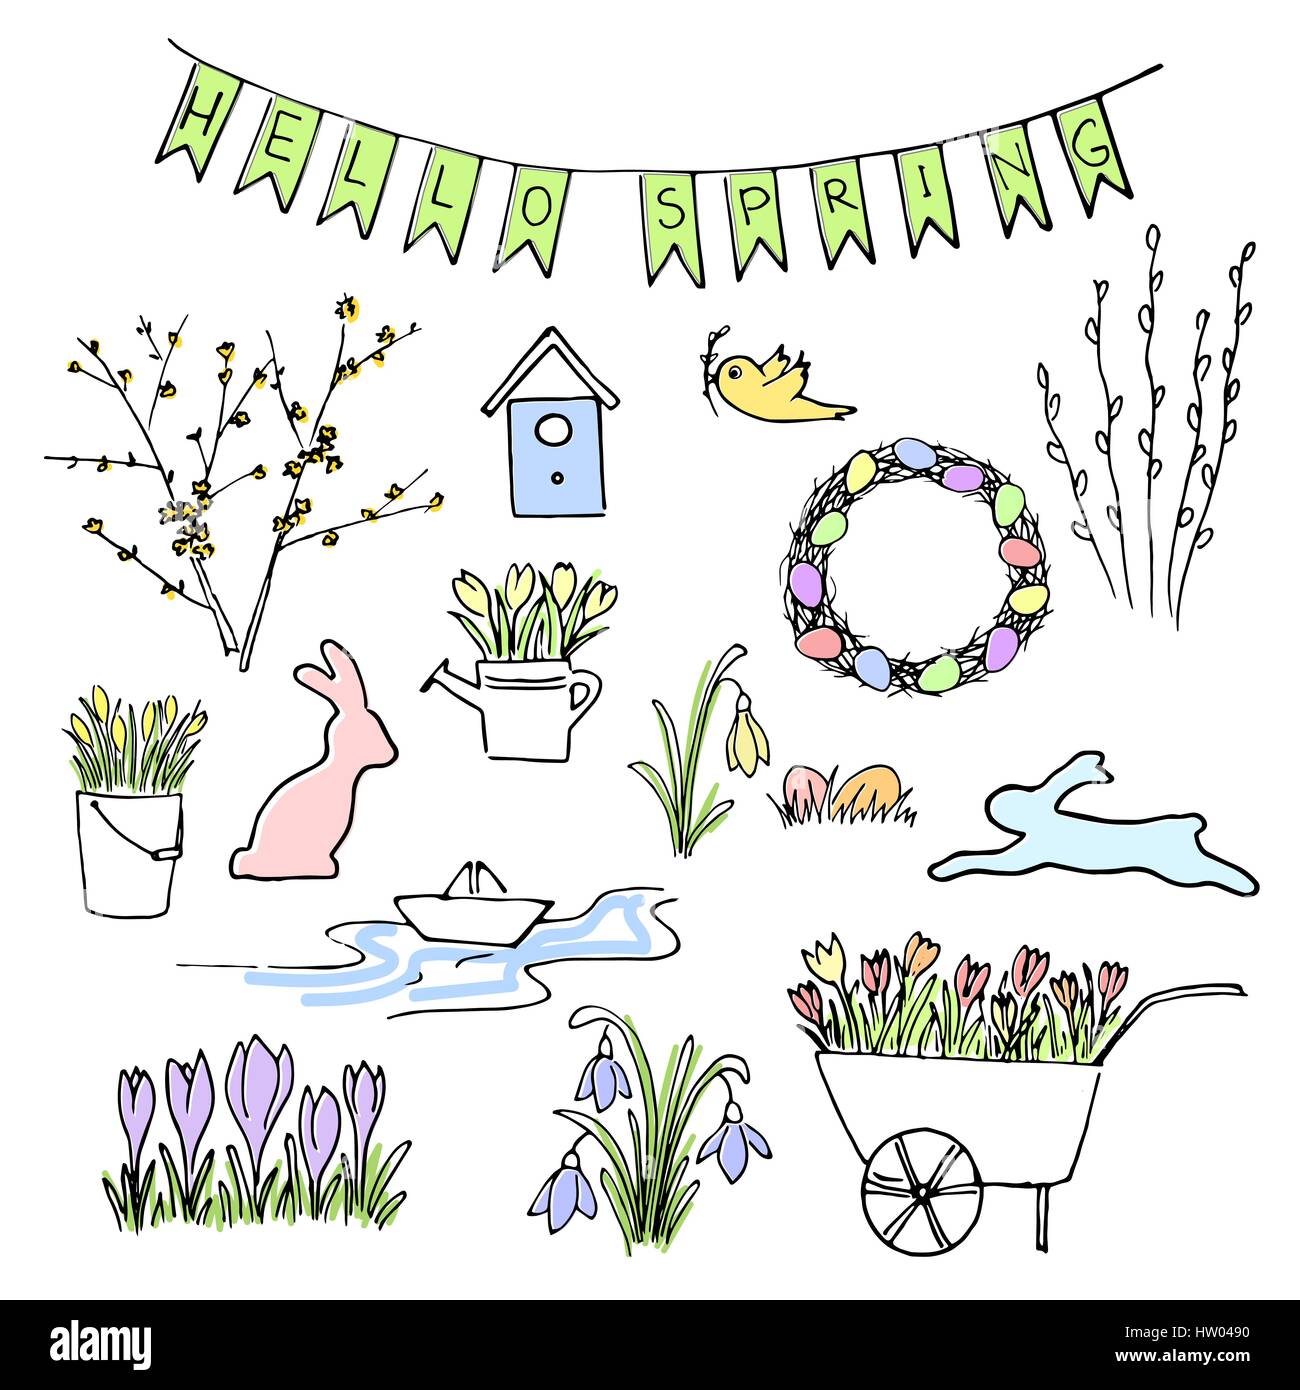 Hallo Frühling farbige Skizze festgelegt. Erste Blumen, Gartenarbeit und Schriftzug. Stock Vektor